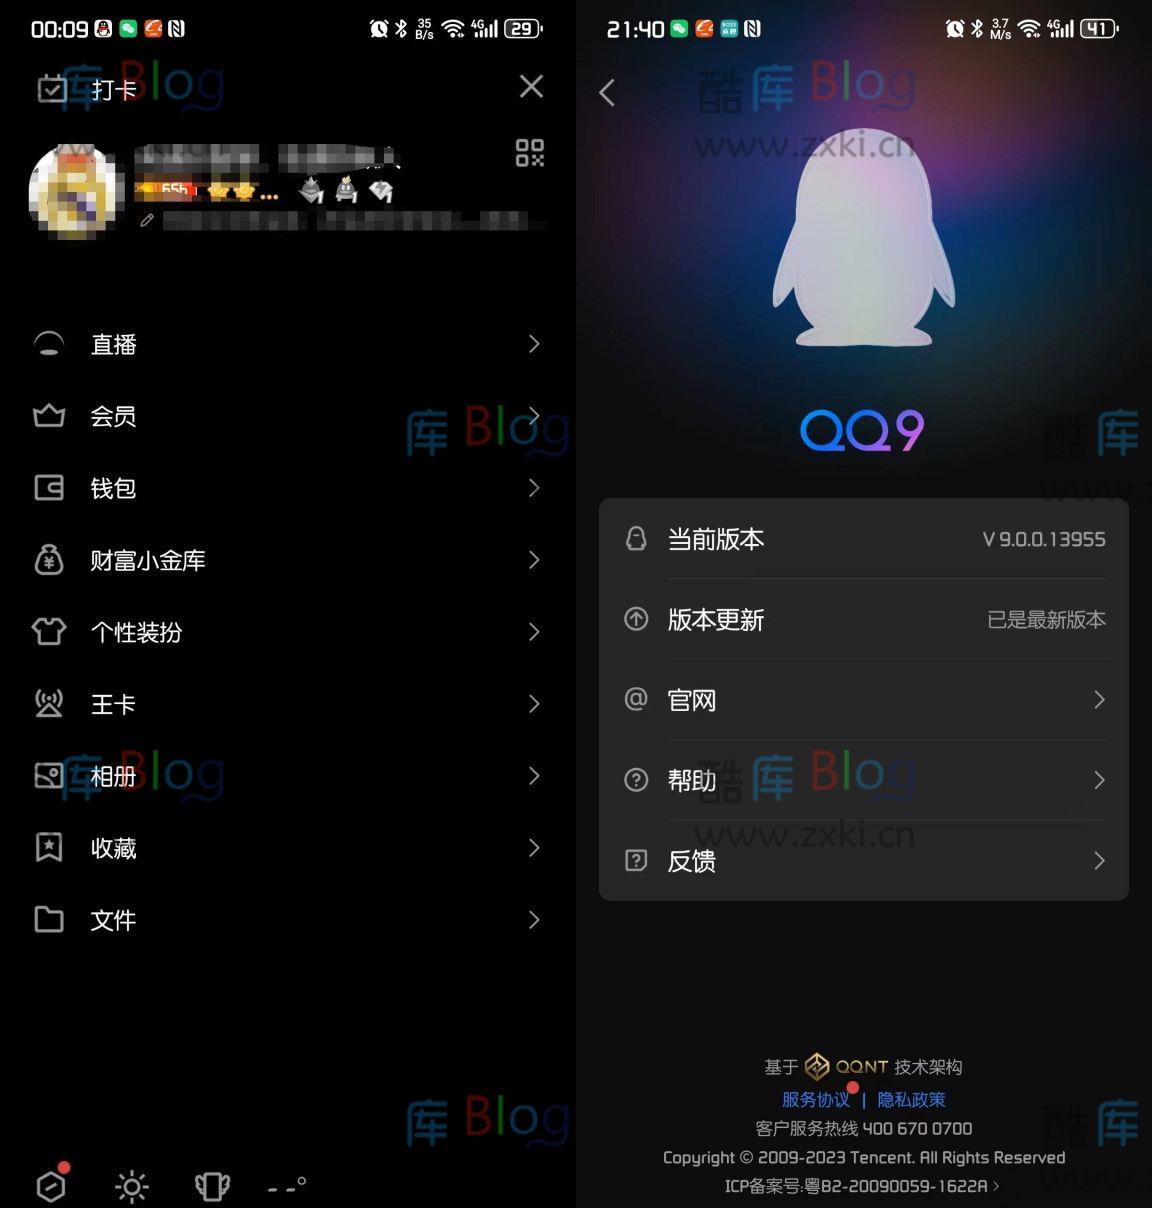 安卓版QQ9.0内测版发布附安装包 第2张插图